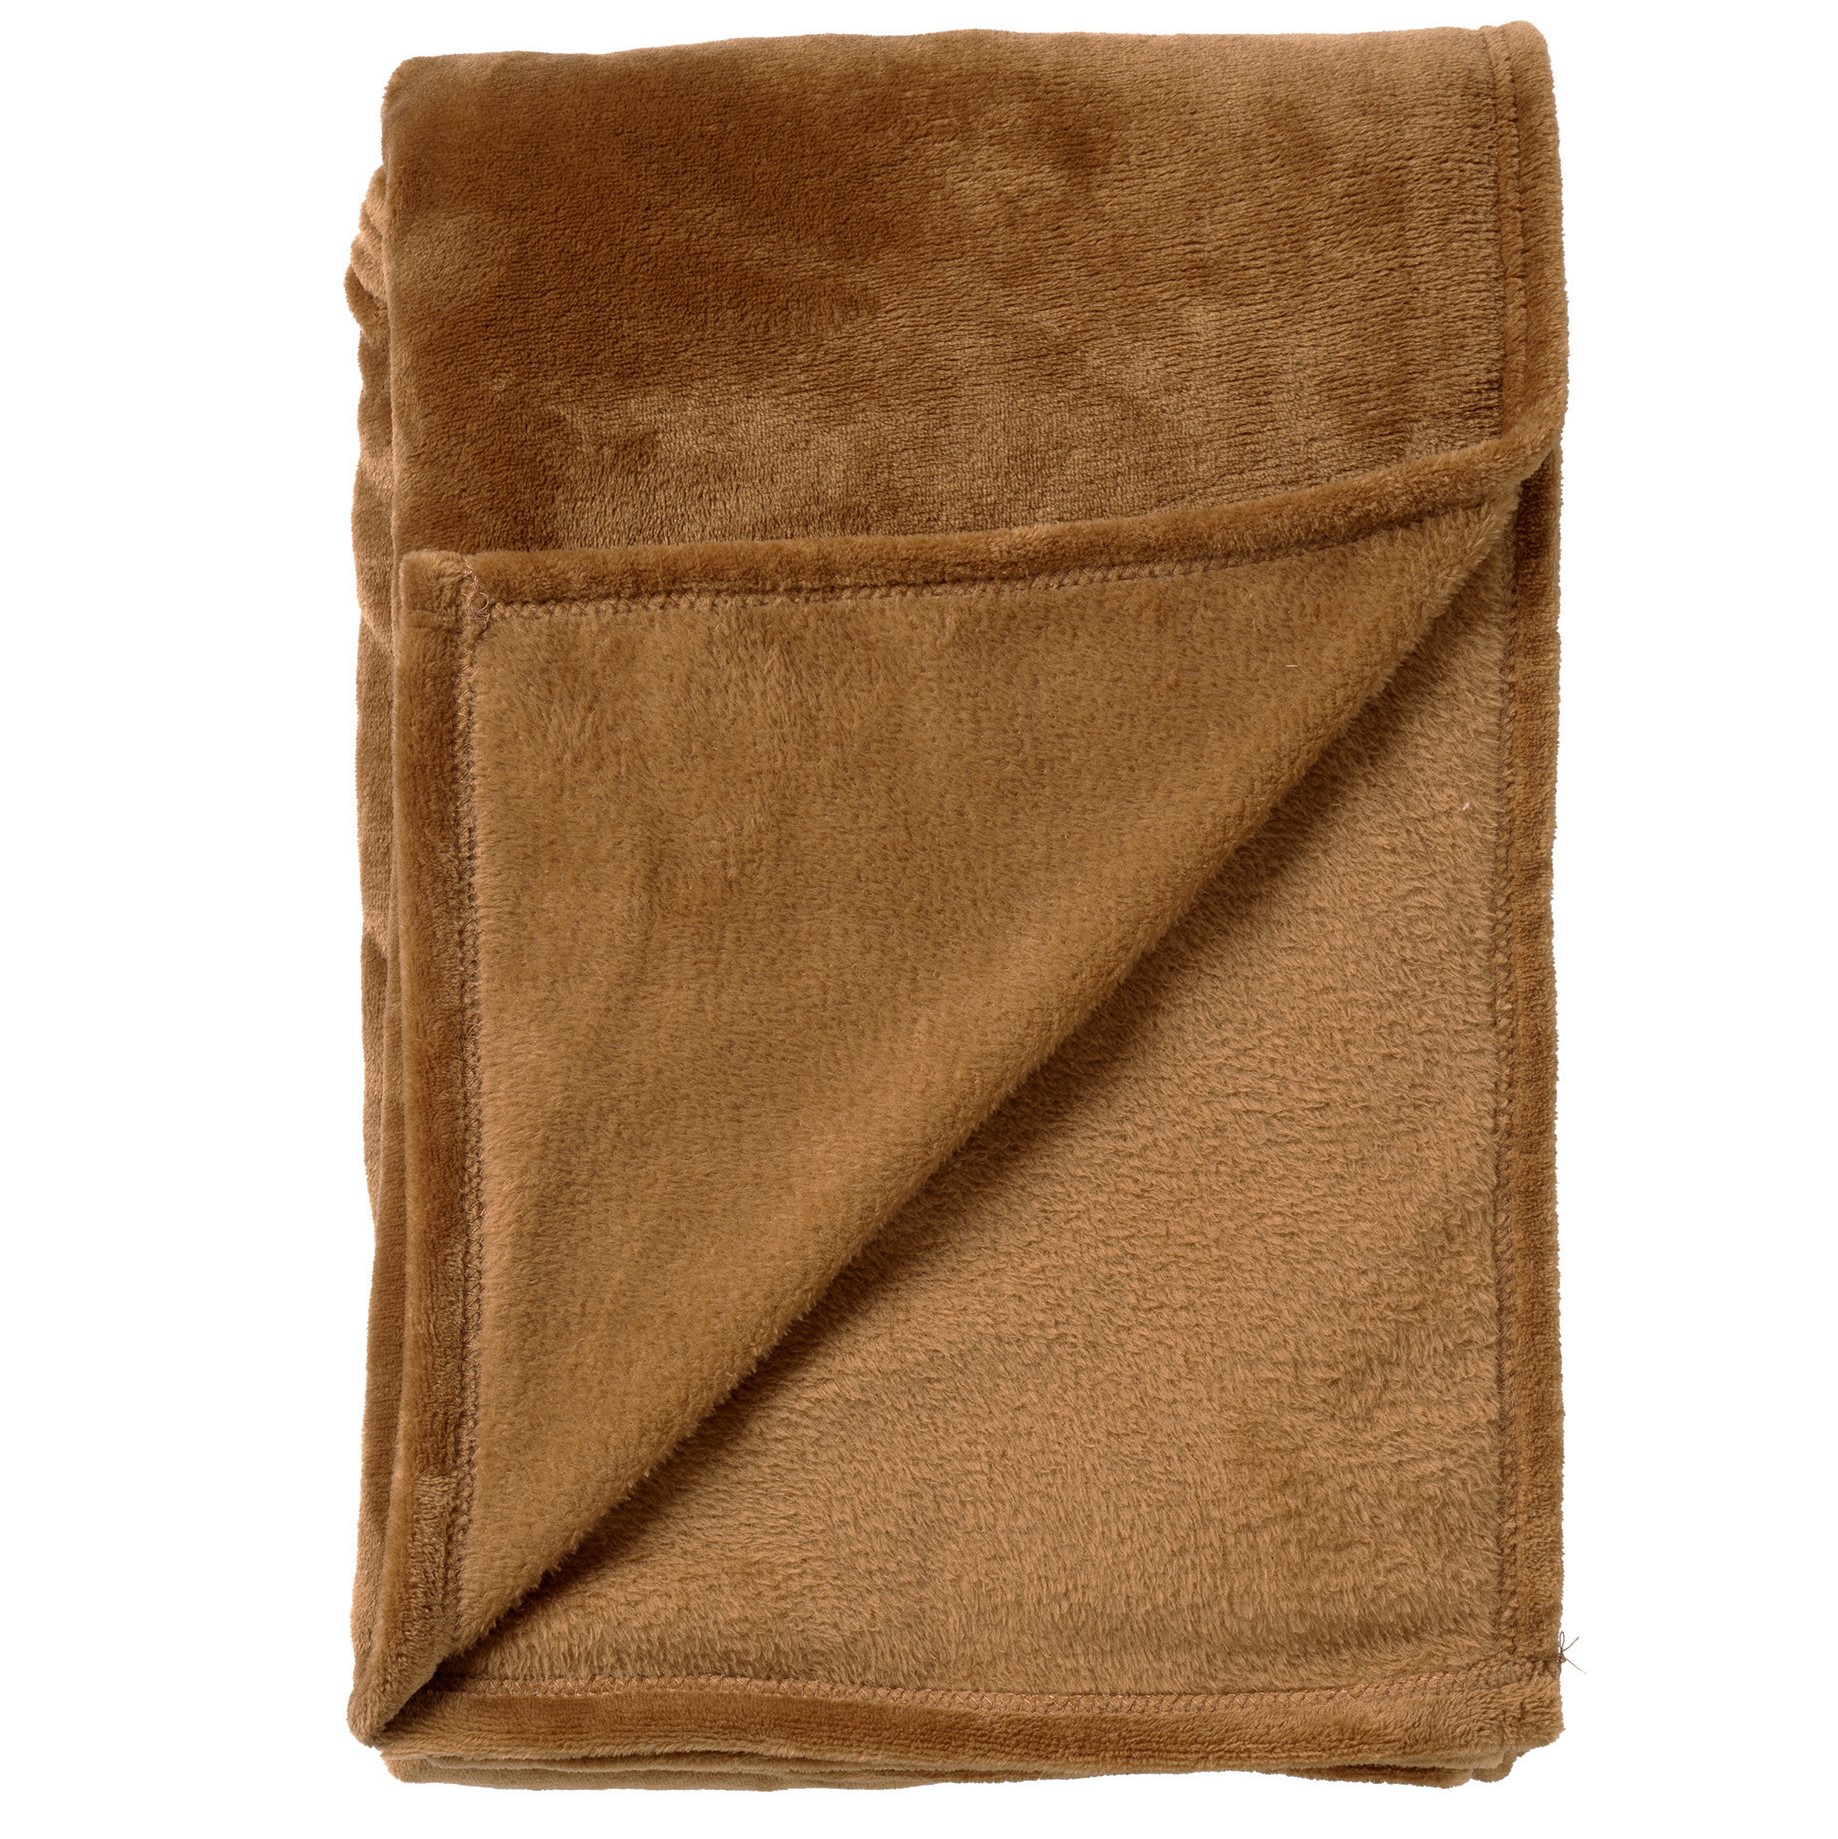 BILLY - Plaid 150x200 cm - flannel fleece - superzacht - Tobacco Brown - bruin